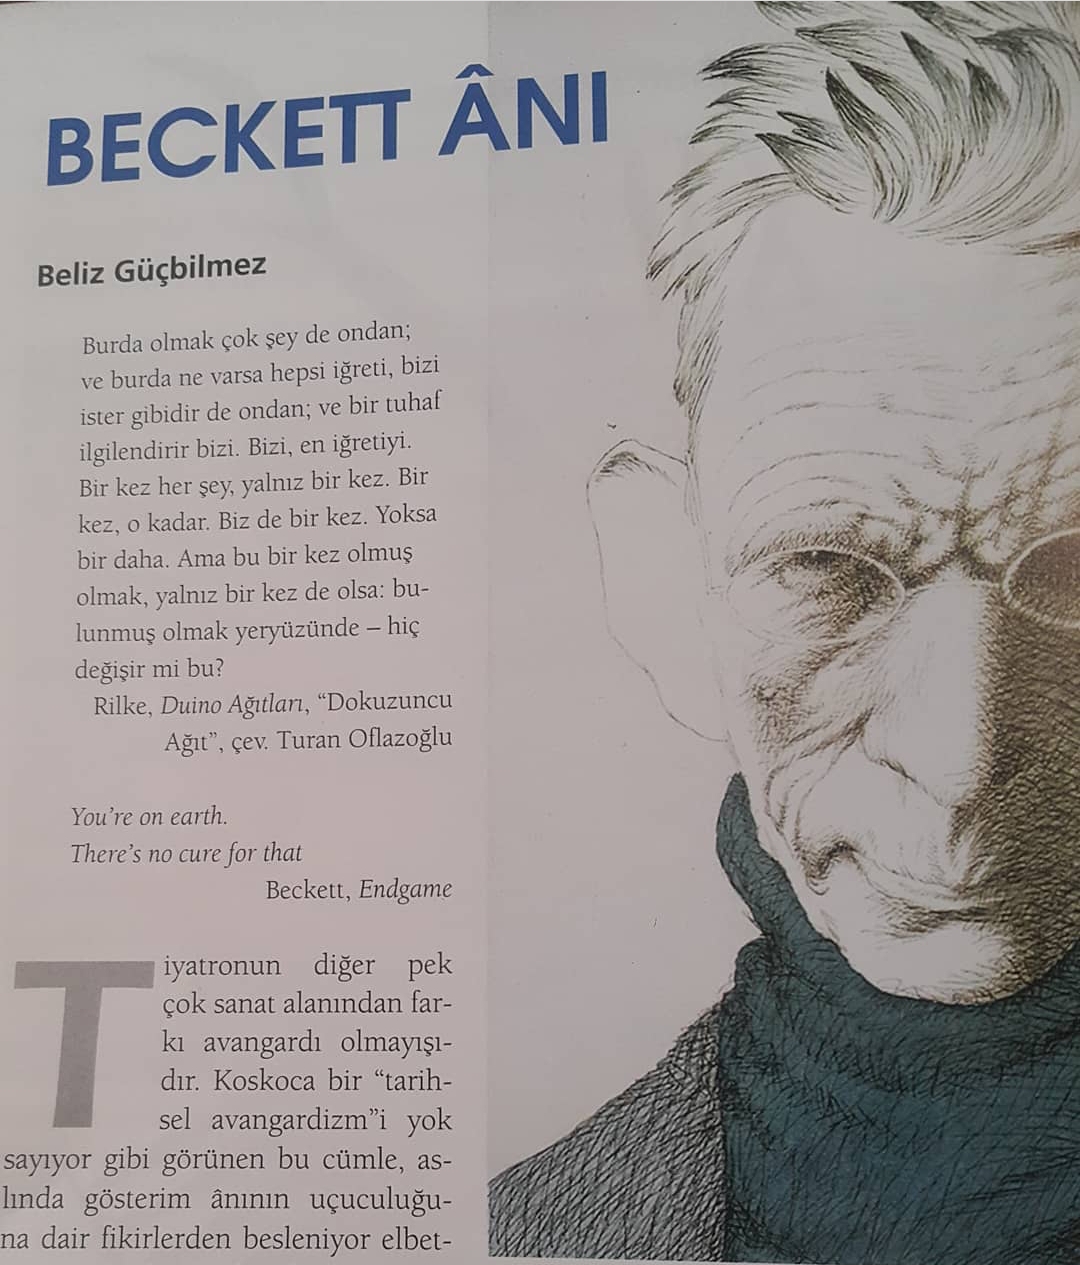 Beckett Ânı